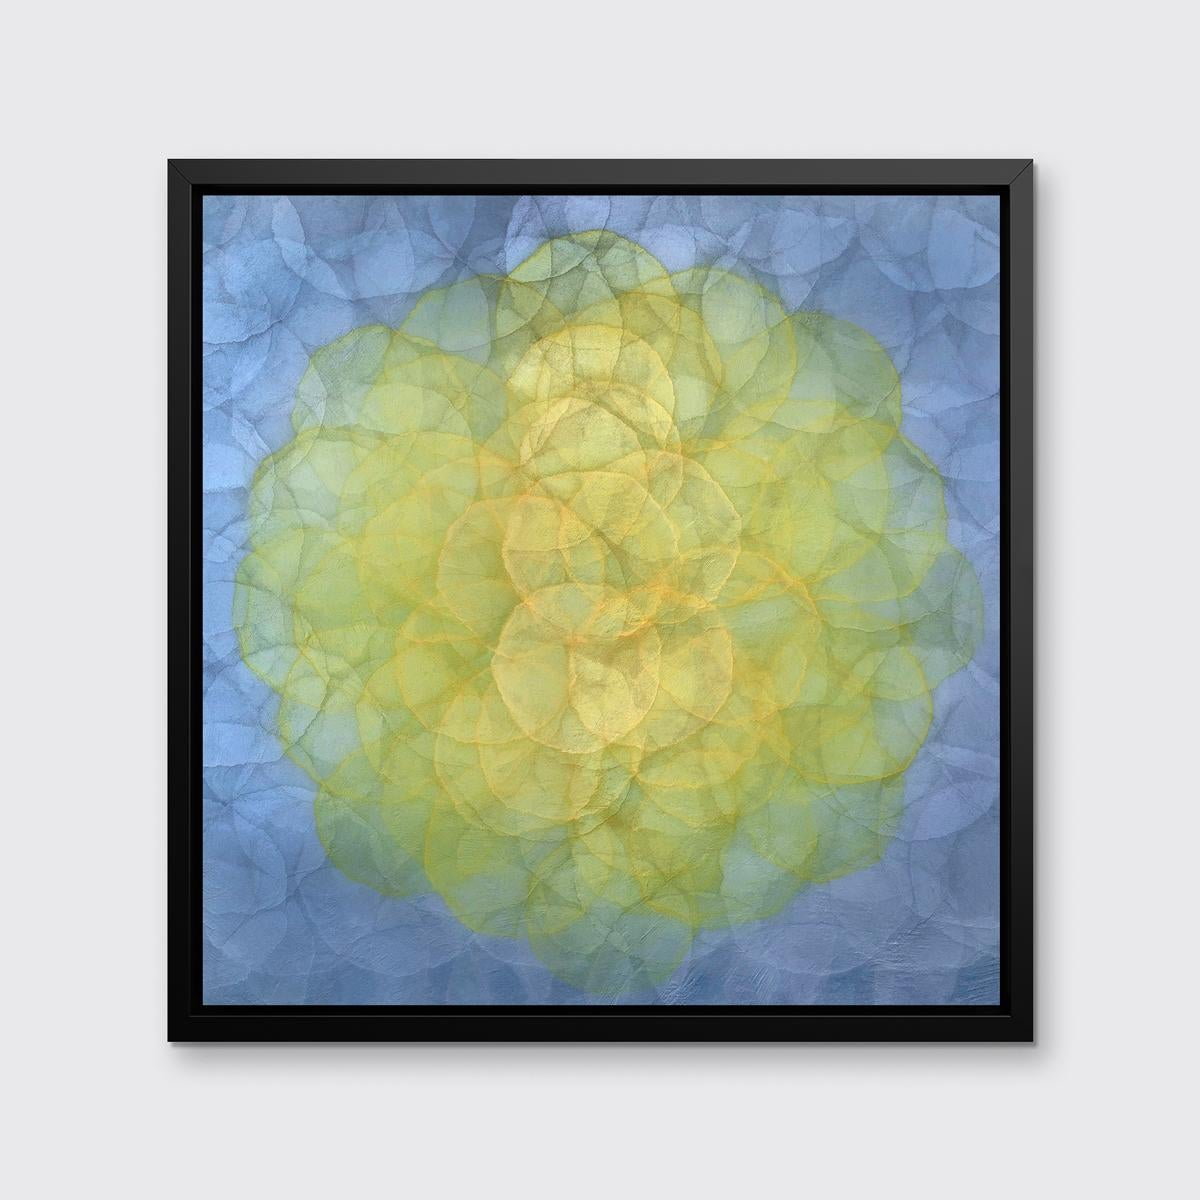 Cette impression abstraite en édition limitée de Roger Mudre présente une palette vibrante avec de petits cercles concentriques composant un plus grand cercle jaune au centre de la composition, et un périmètre froid gris argenté lavande. Cette